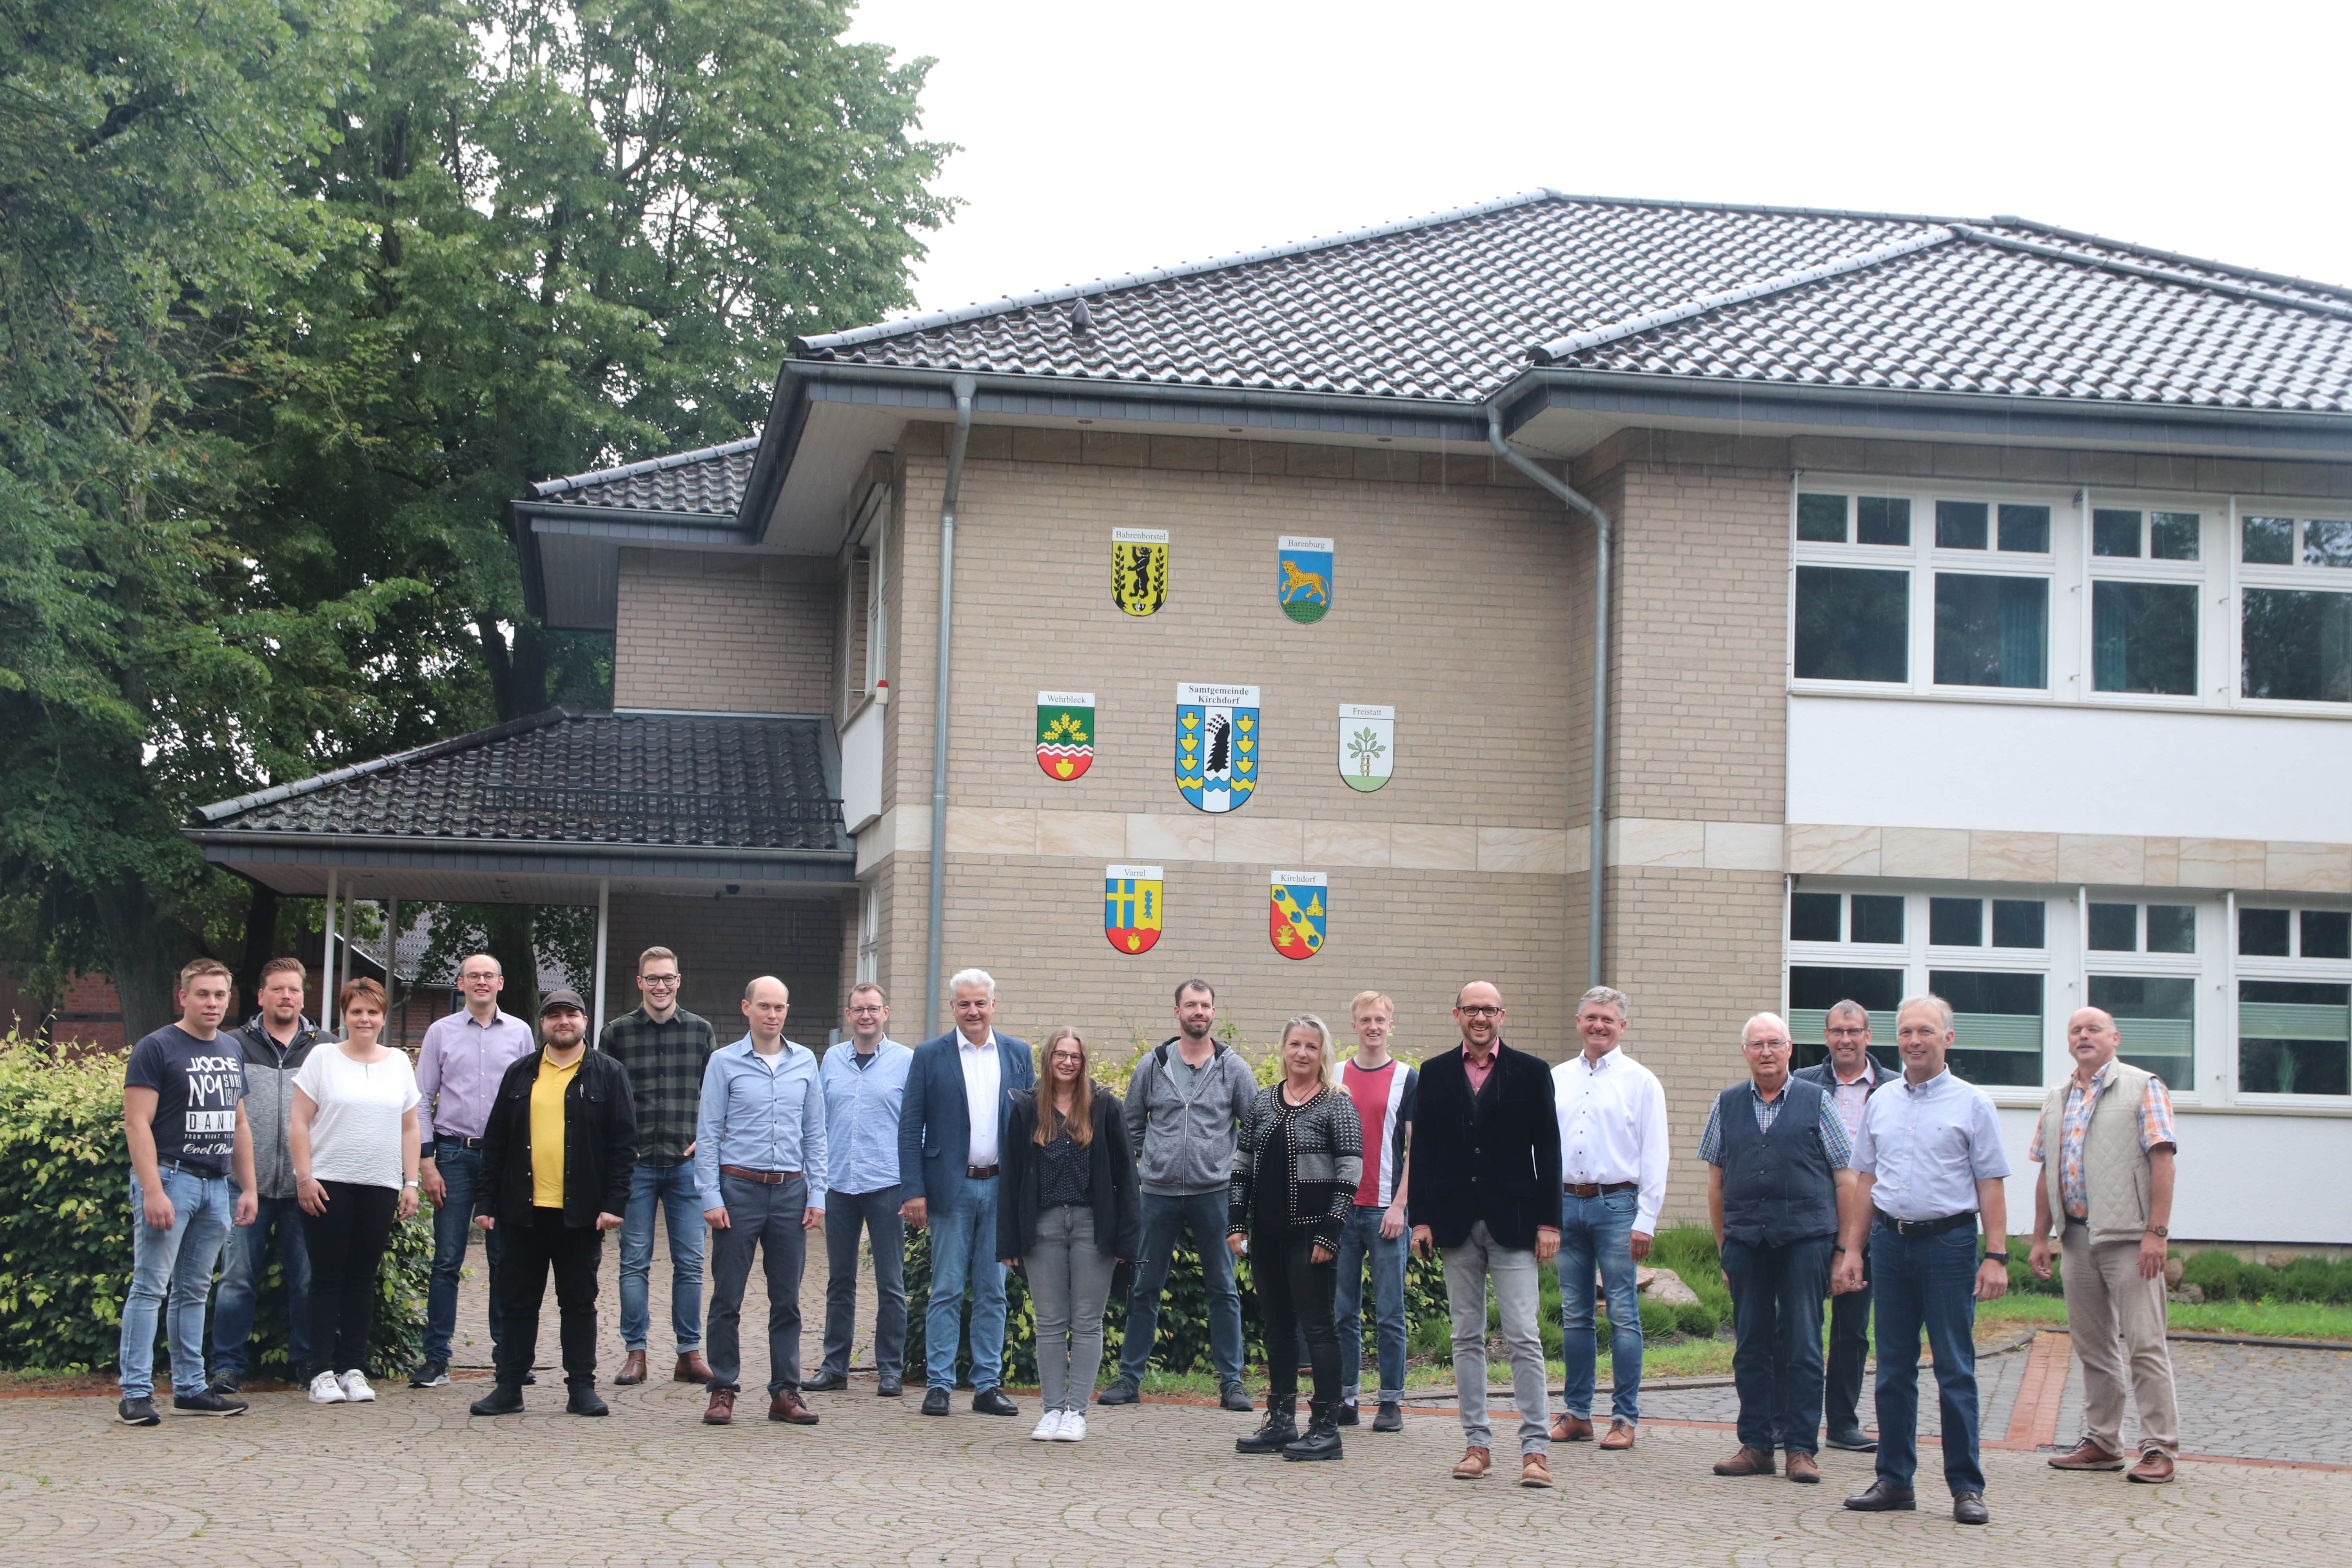 Gruppenfoto der Kandidatinnen und Kandidaten vor dem Rathaus in Kirchdorf. 